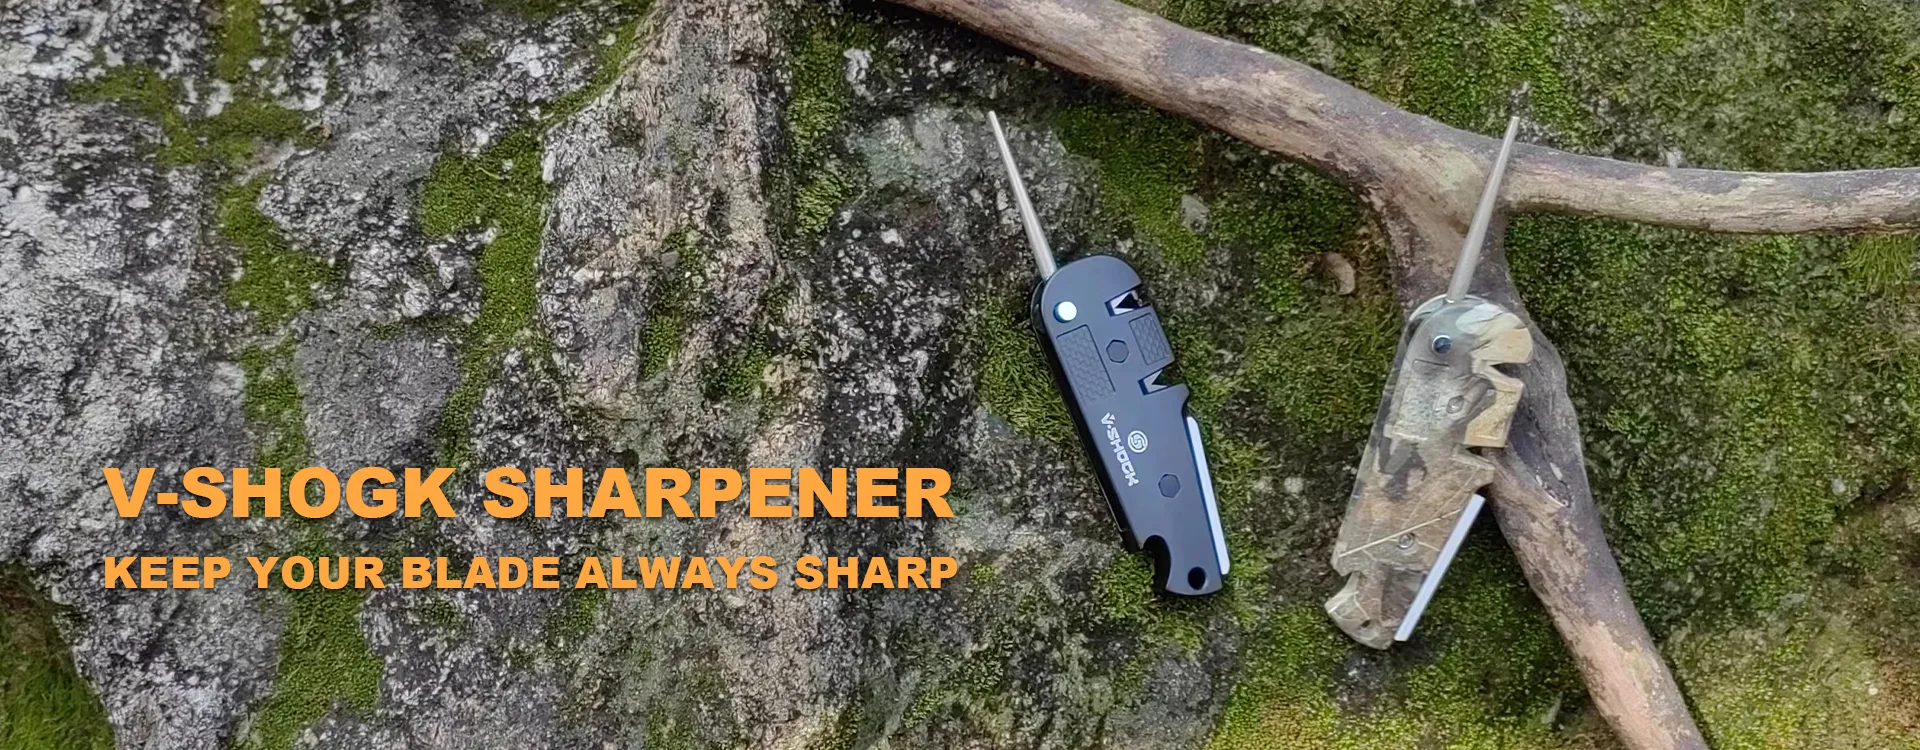 Multi-Functional Knife Sharpener